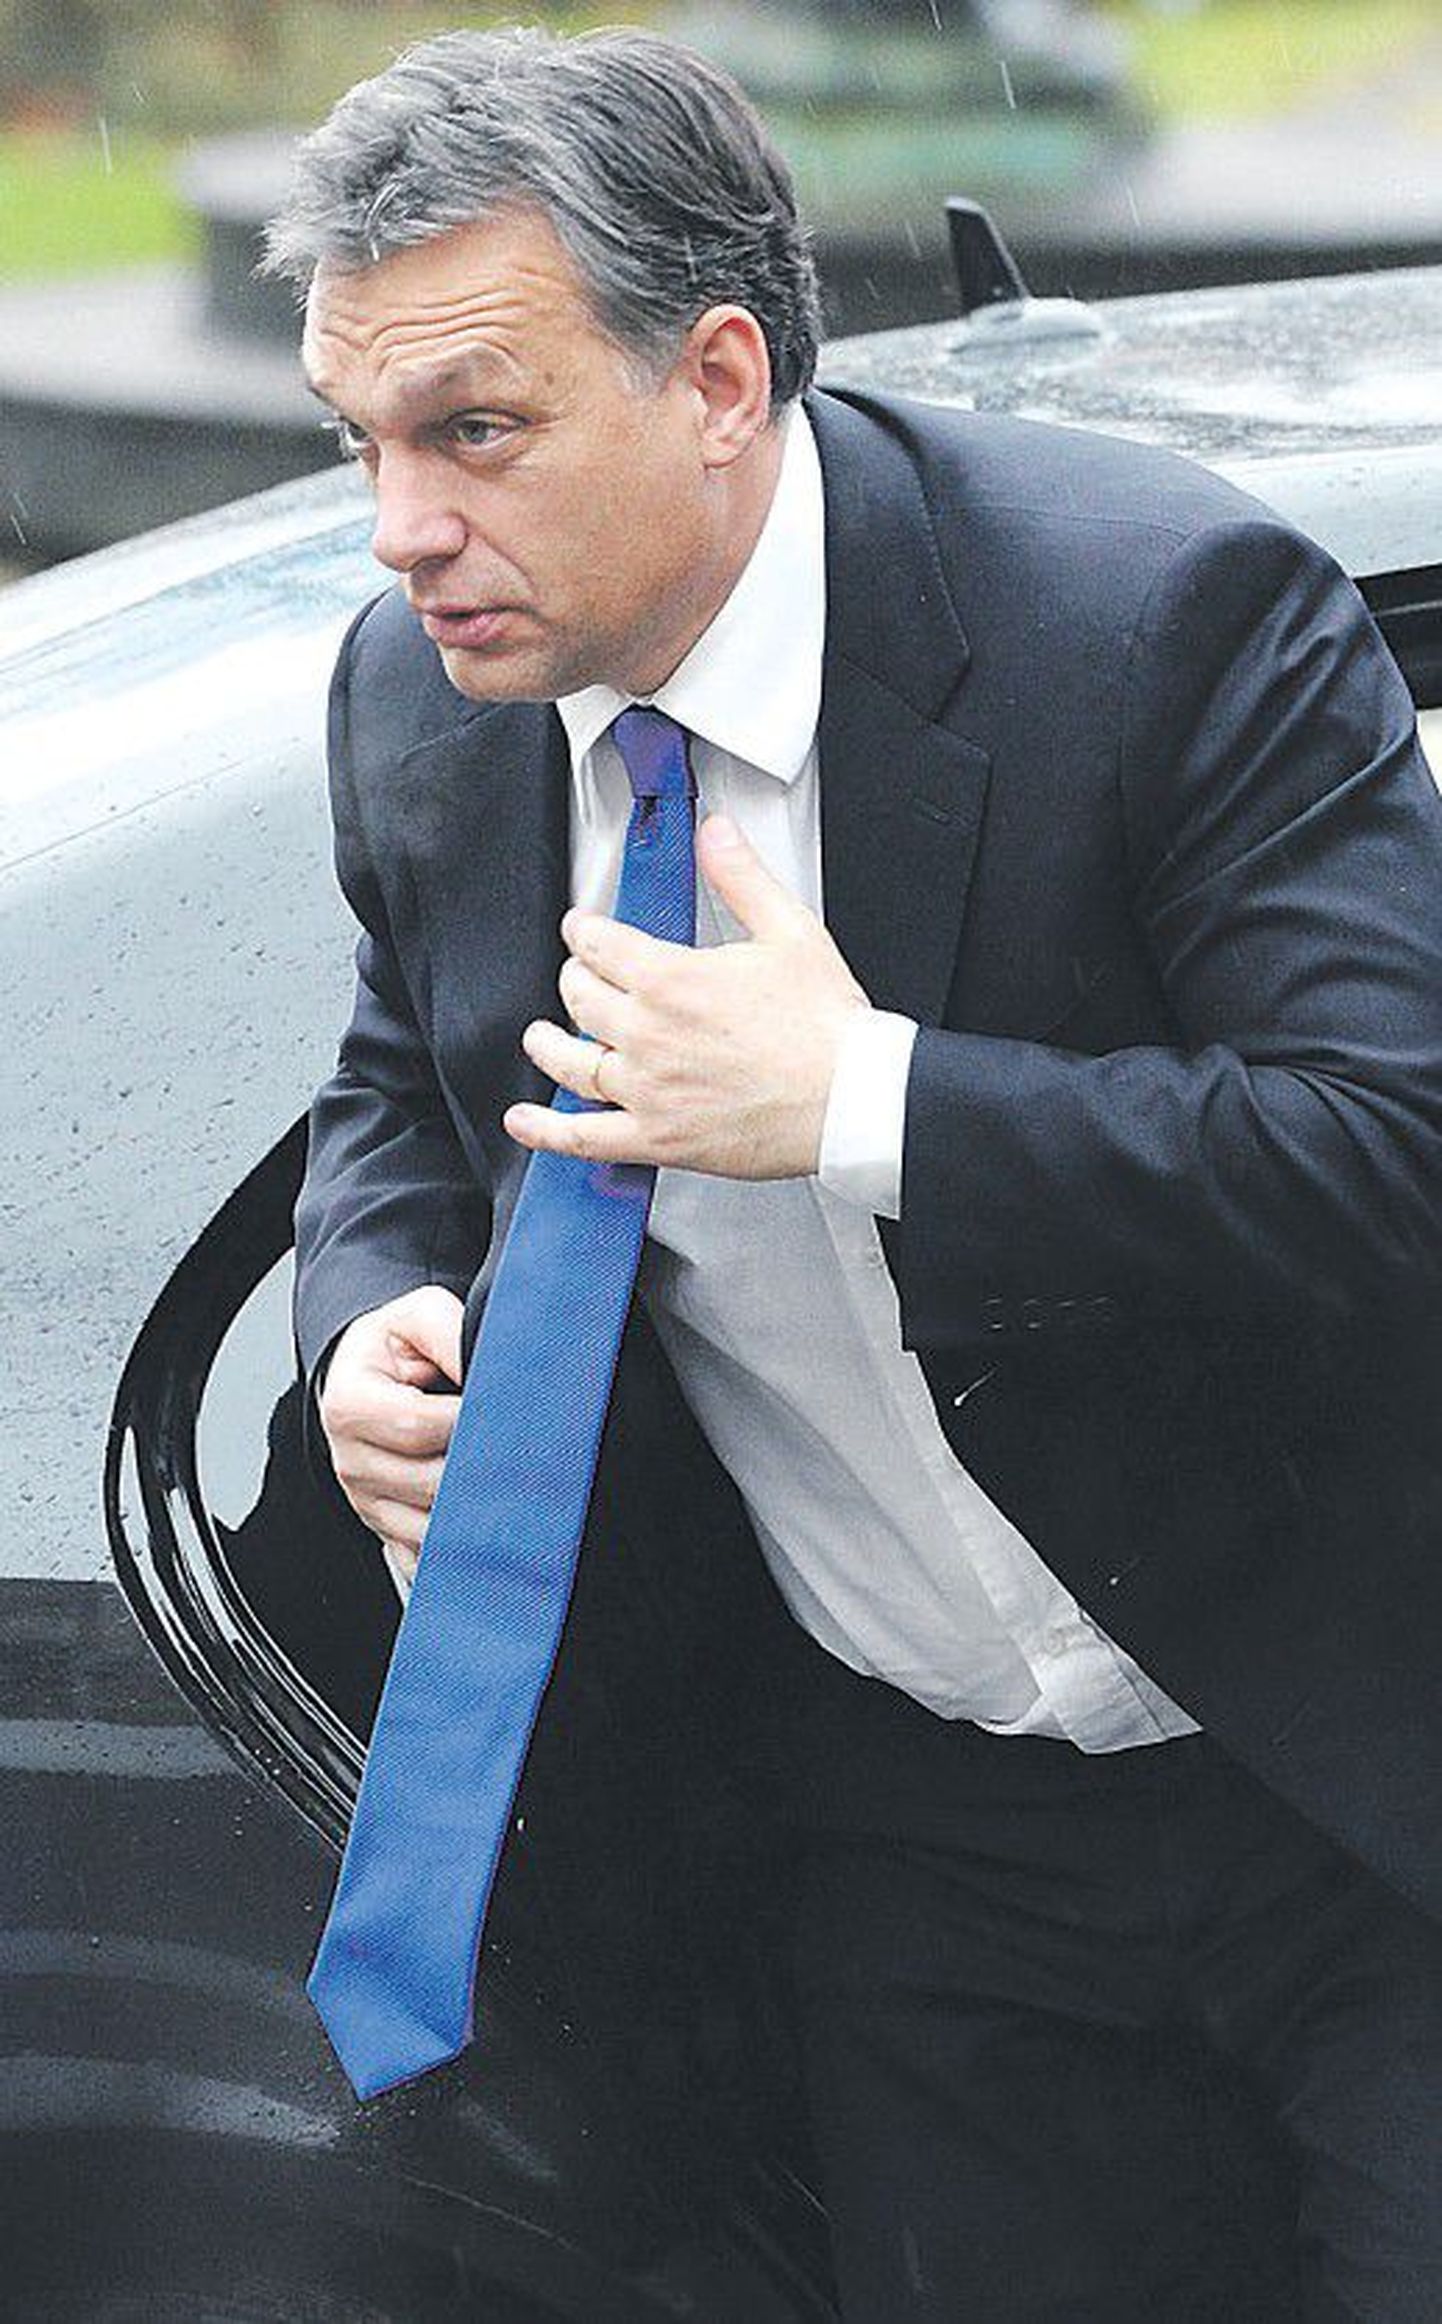 Деятельность премьер-министра Виктора Орбана вызывает у оппозиции опасения в том, не предпочитает ли он демократической форме правления авторитарную.